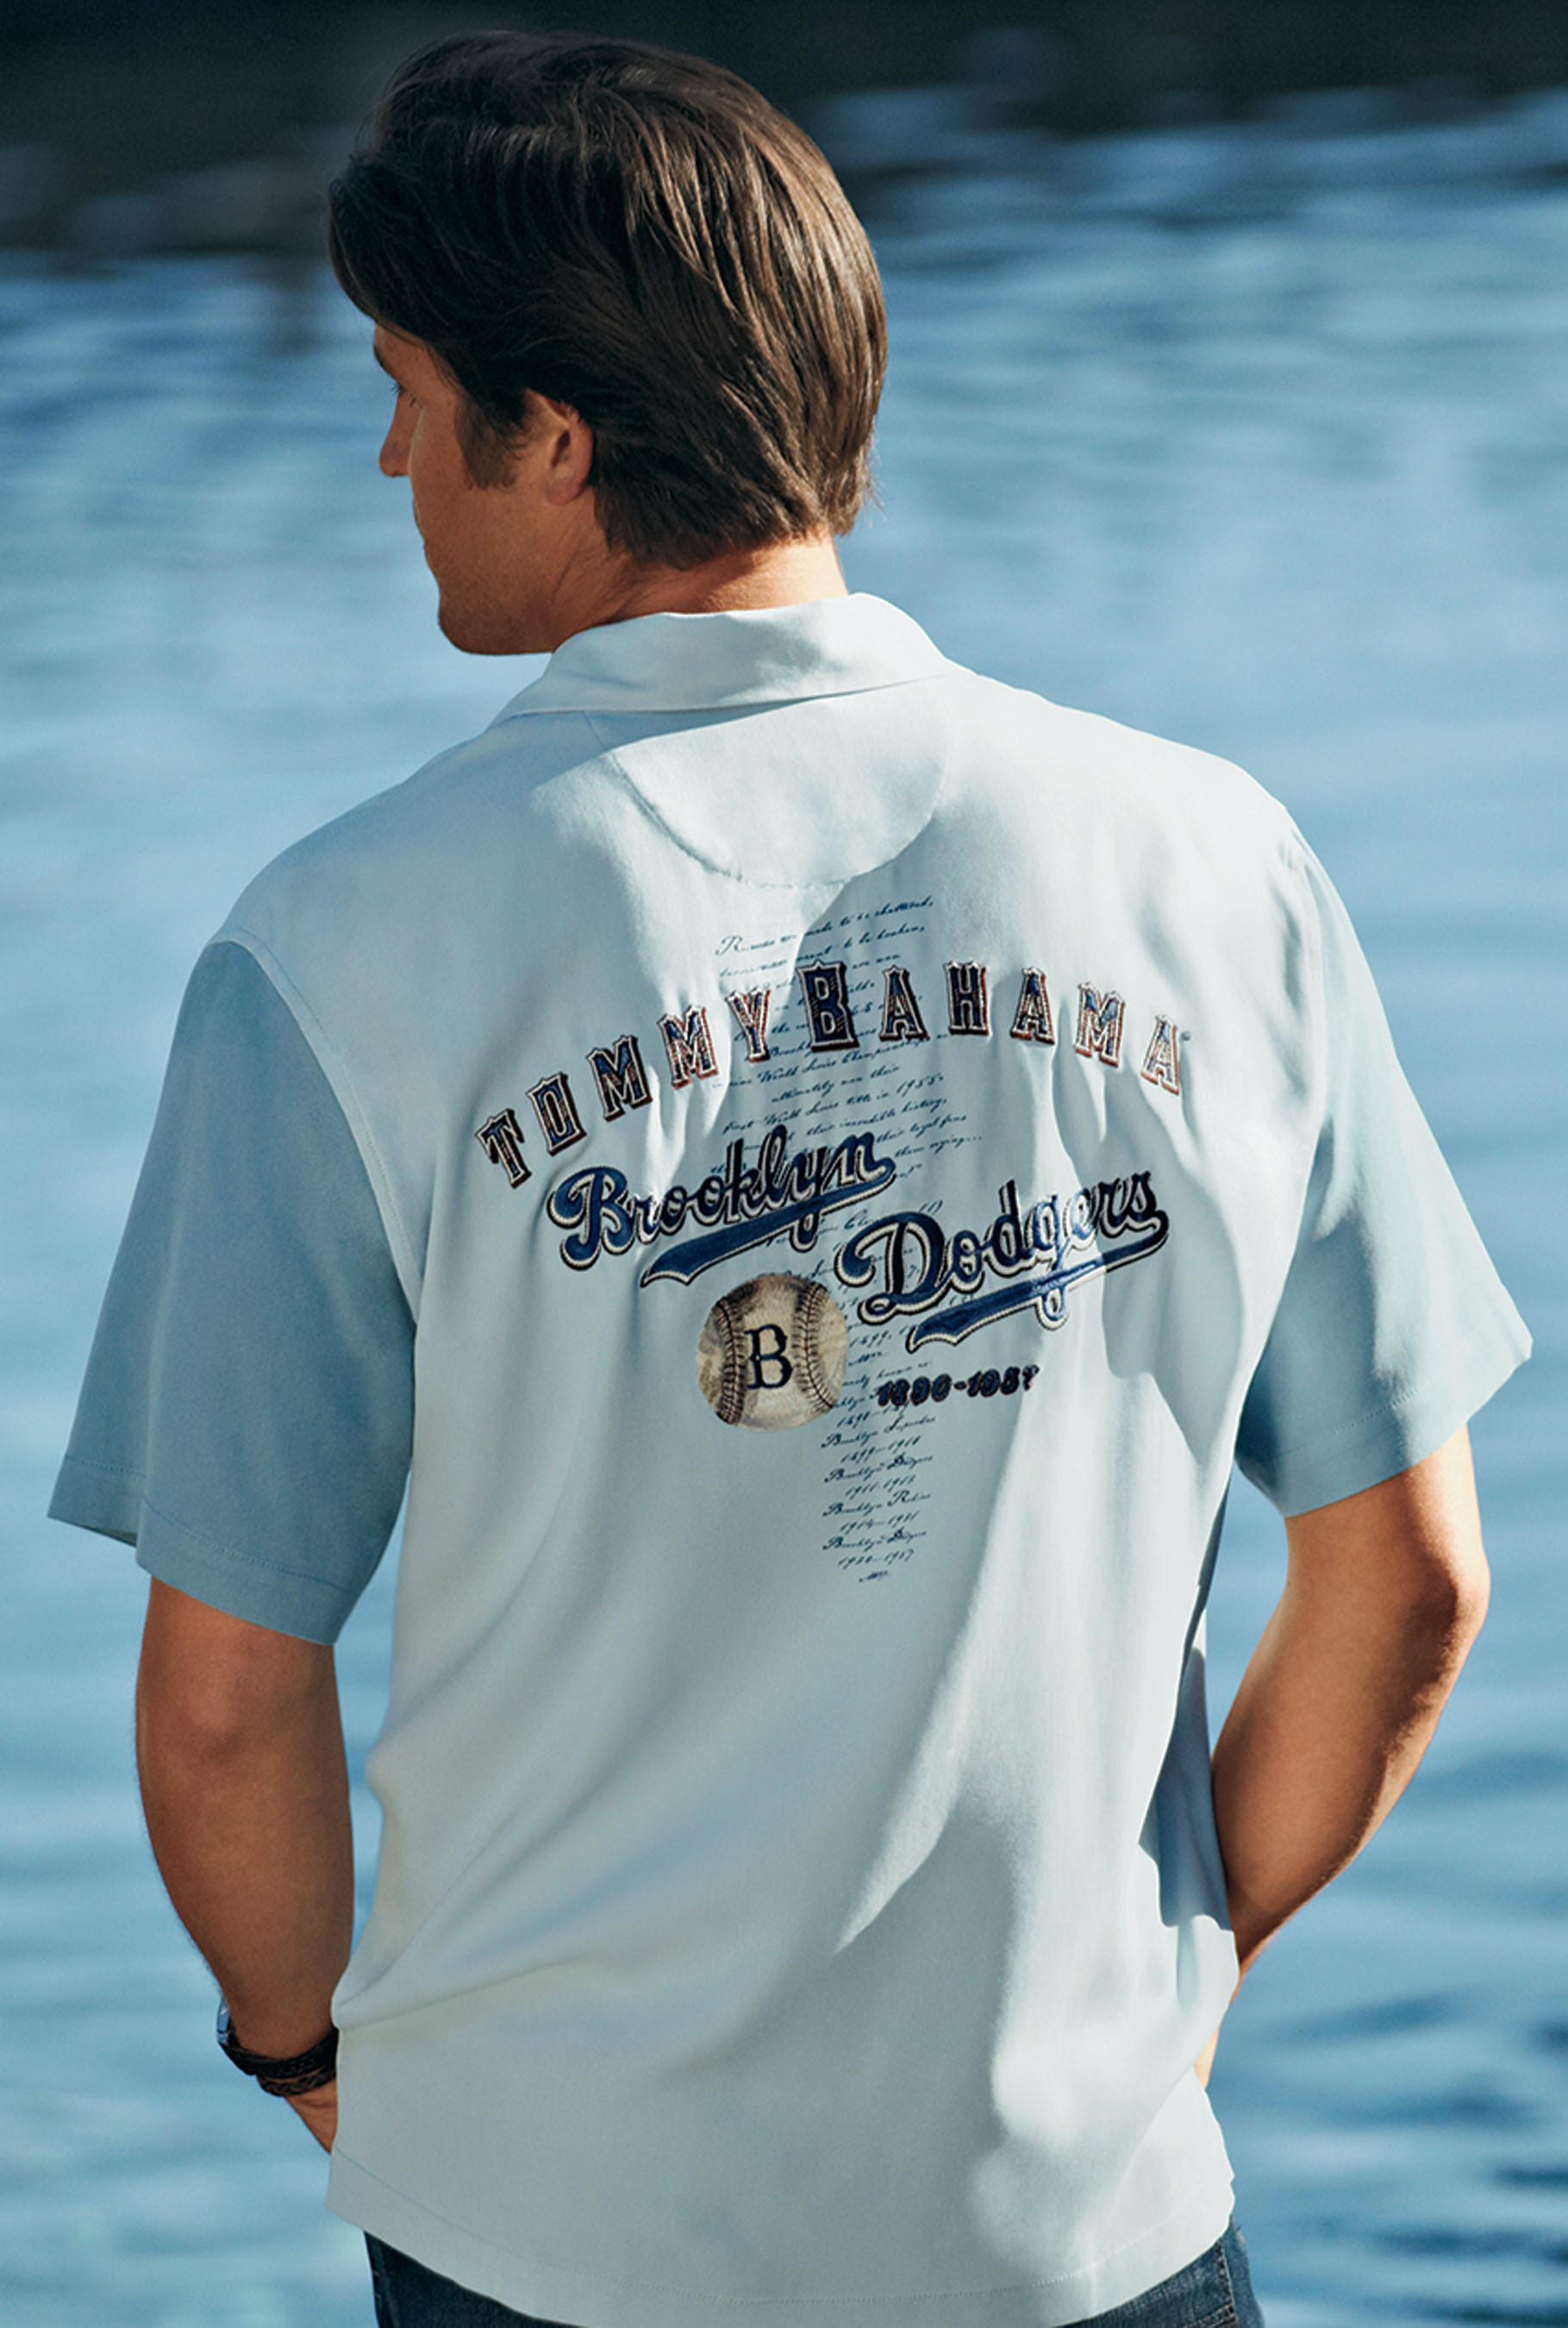 Tommy Bahama Announces 2011 'Collector's Edition' Major League Baseball  Team Shirts